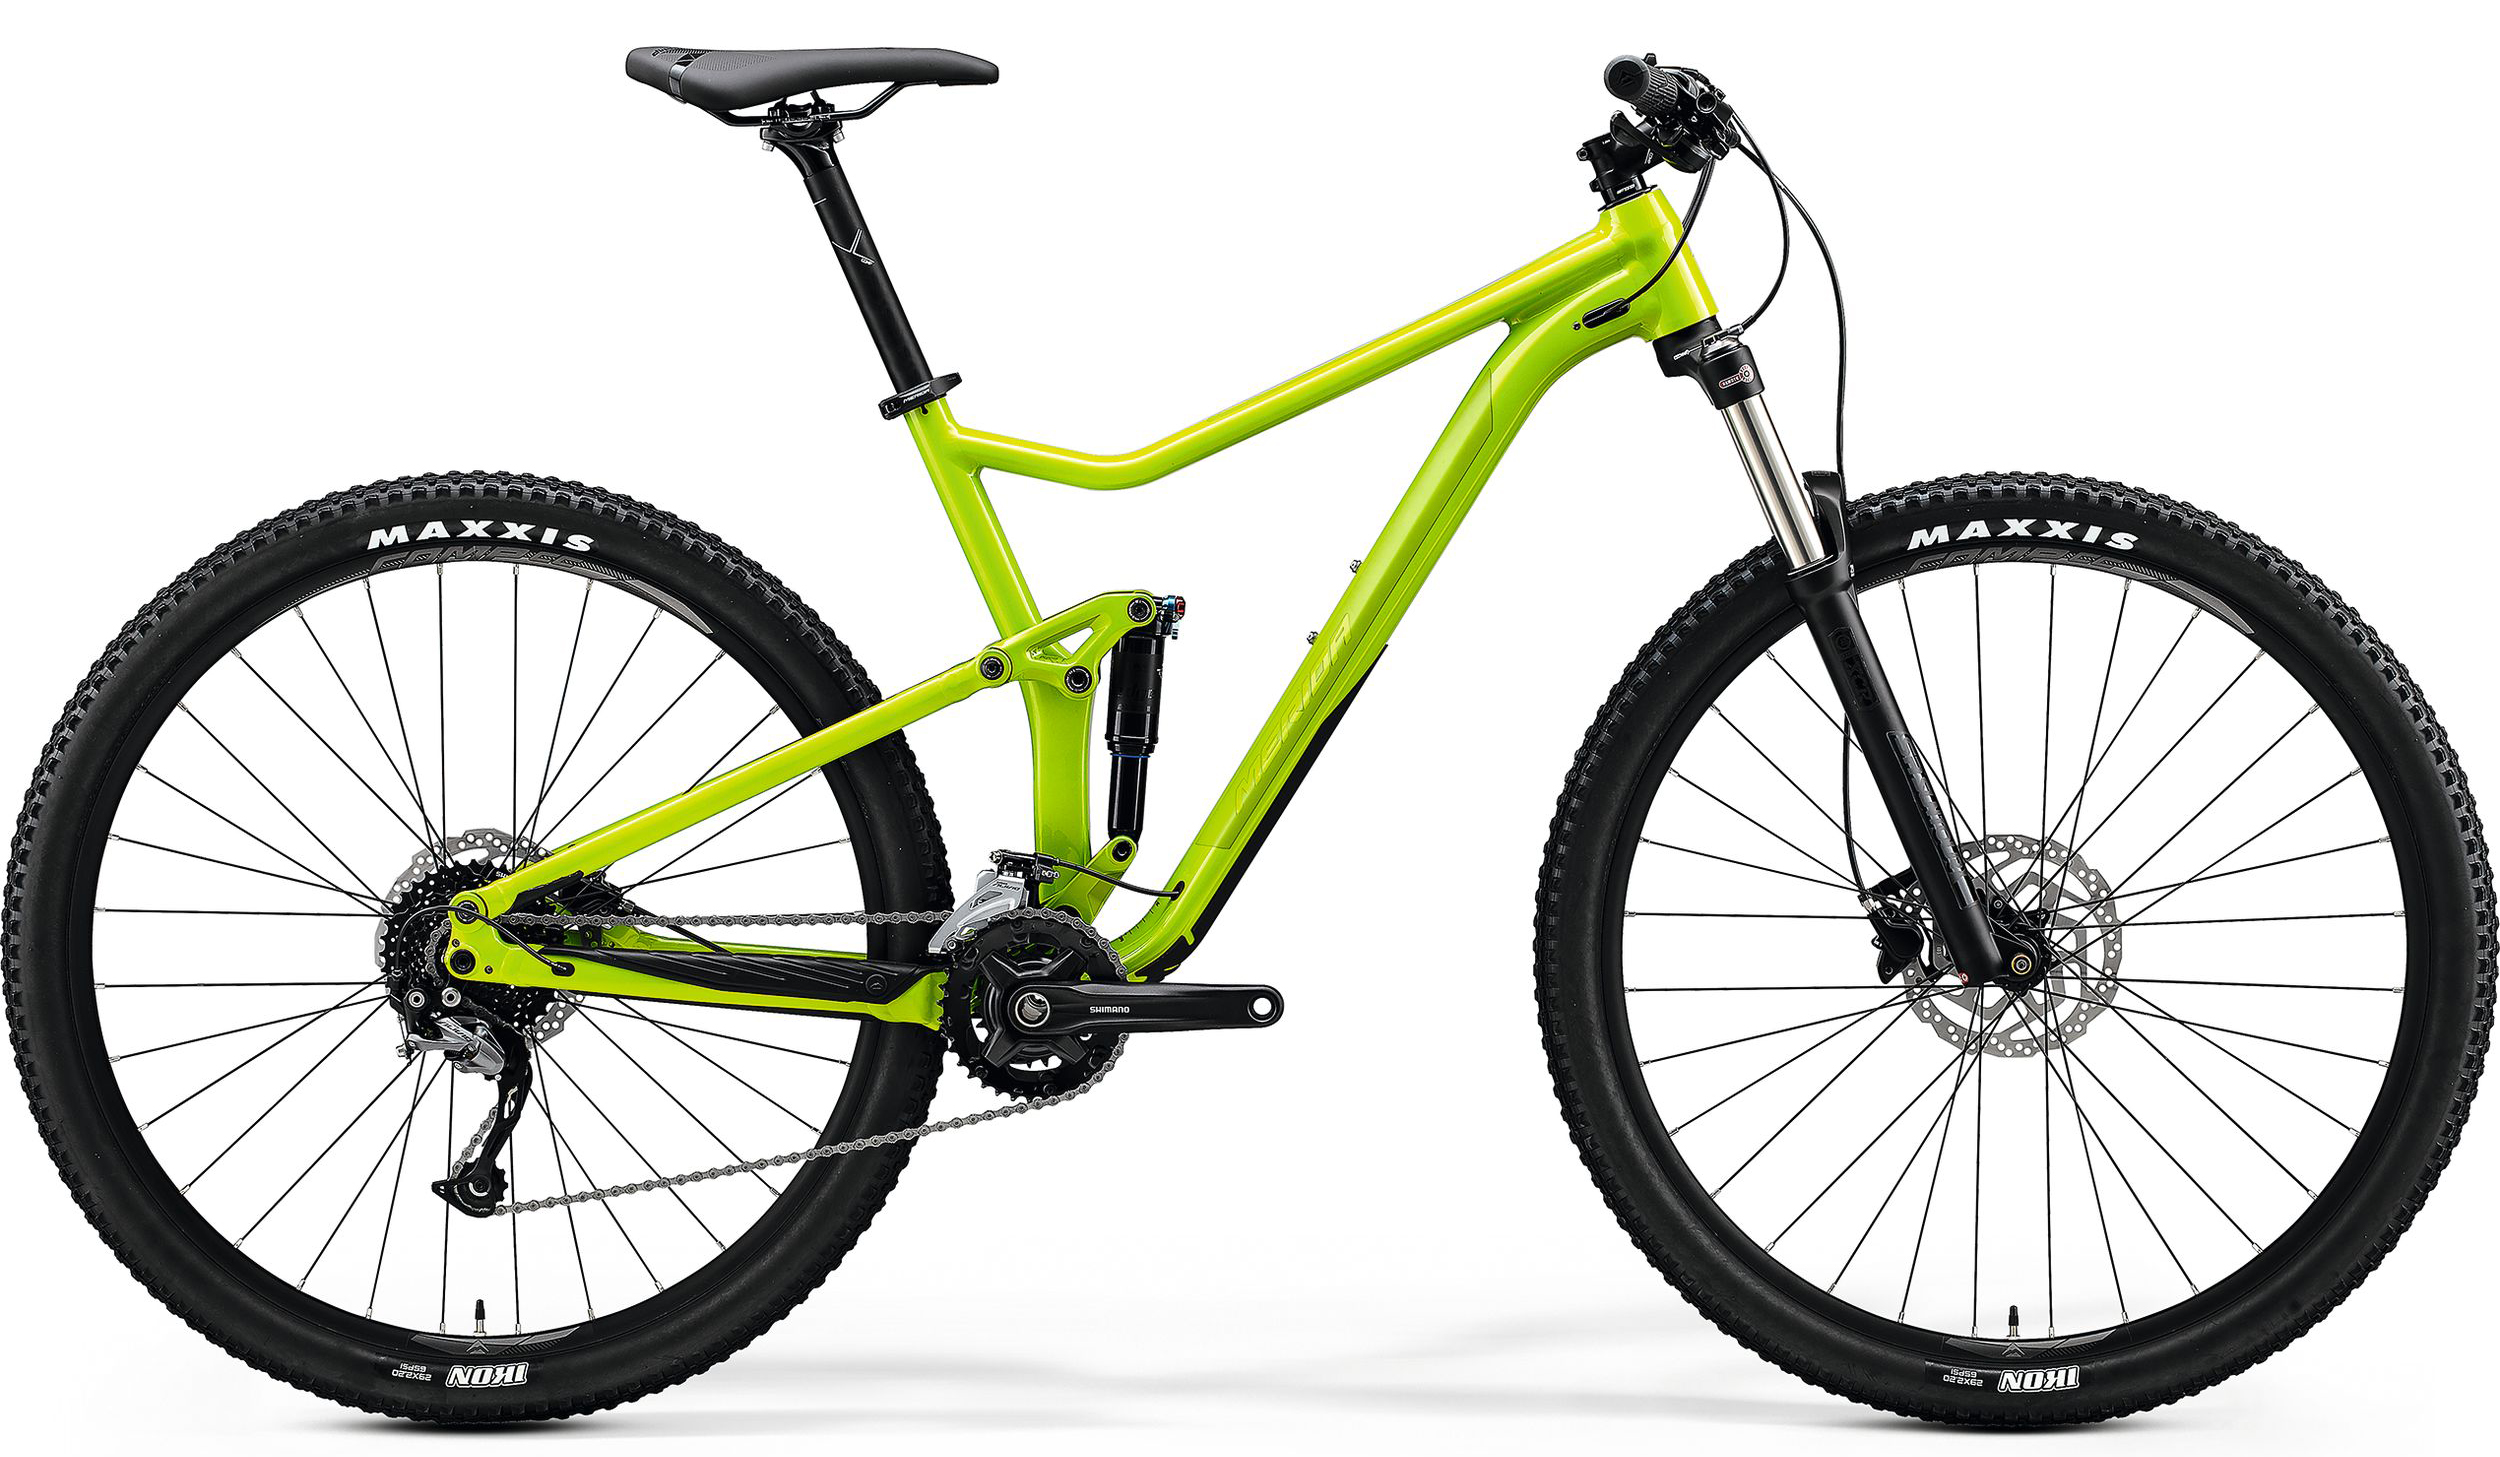  Отзывы о Двухподвесном велосипеде Merida One-Twenty RC 9.300 2020